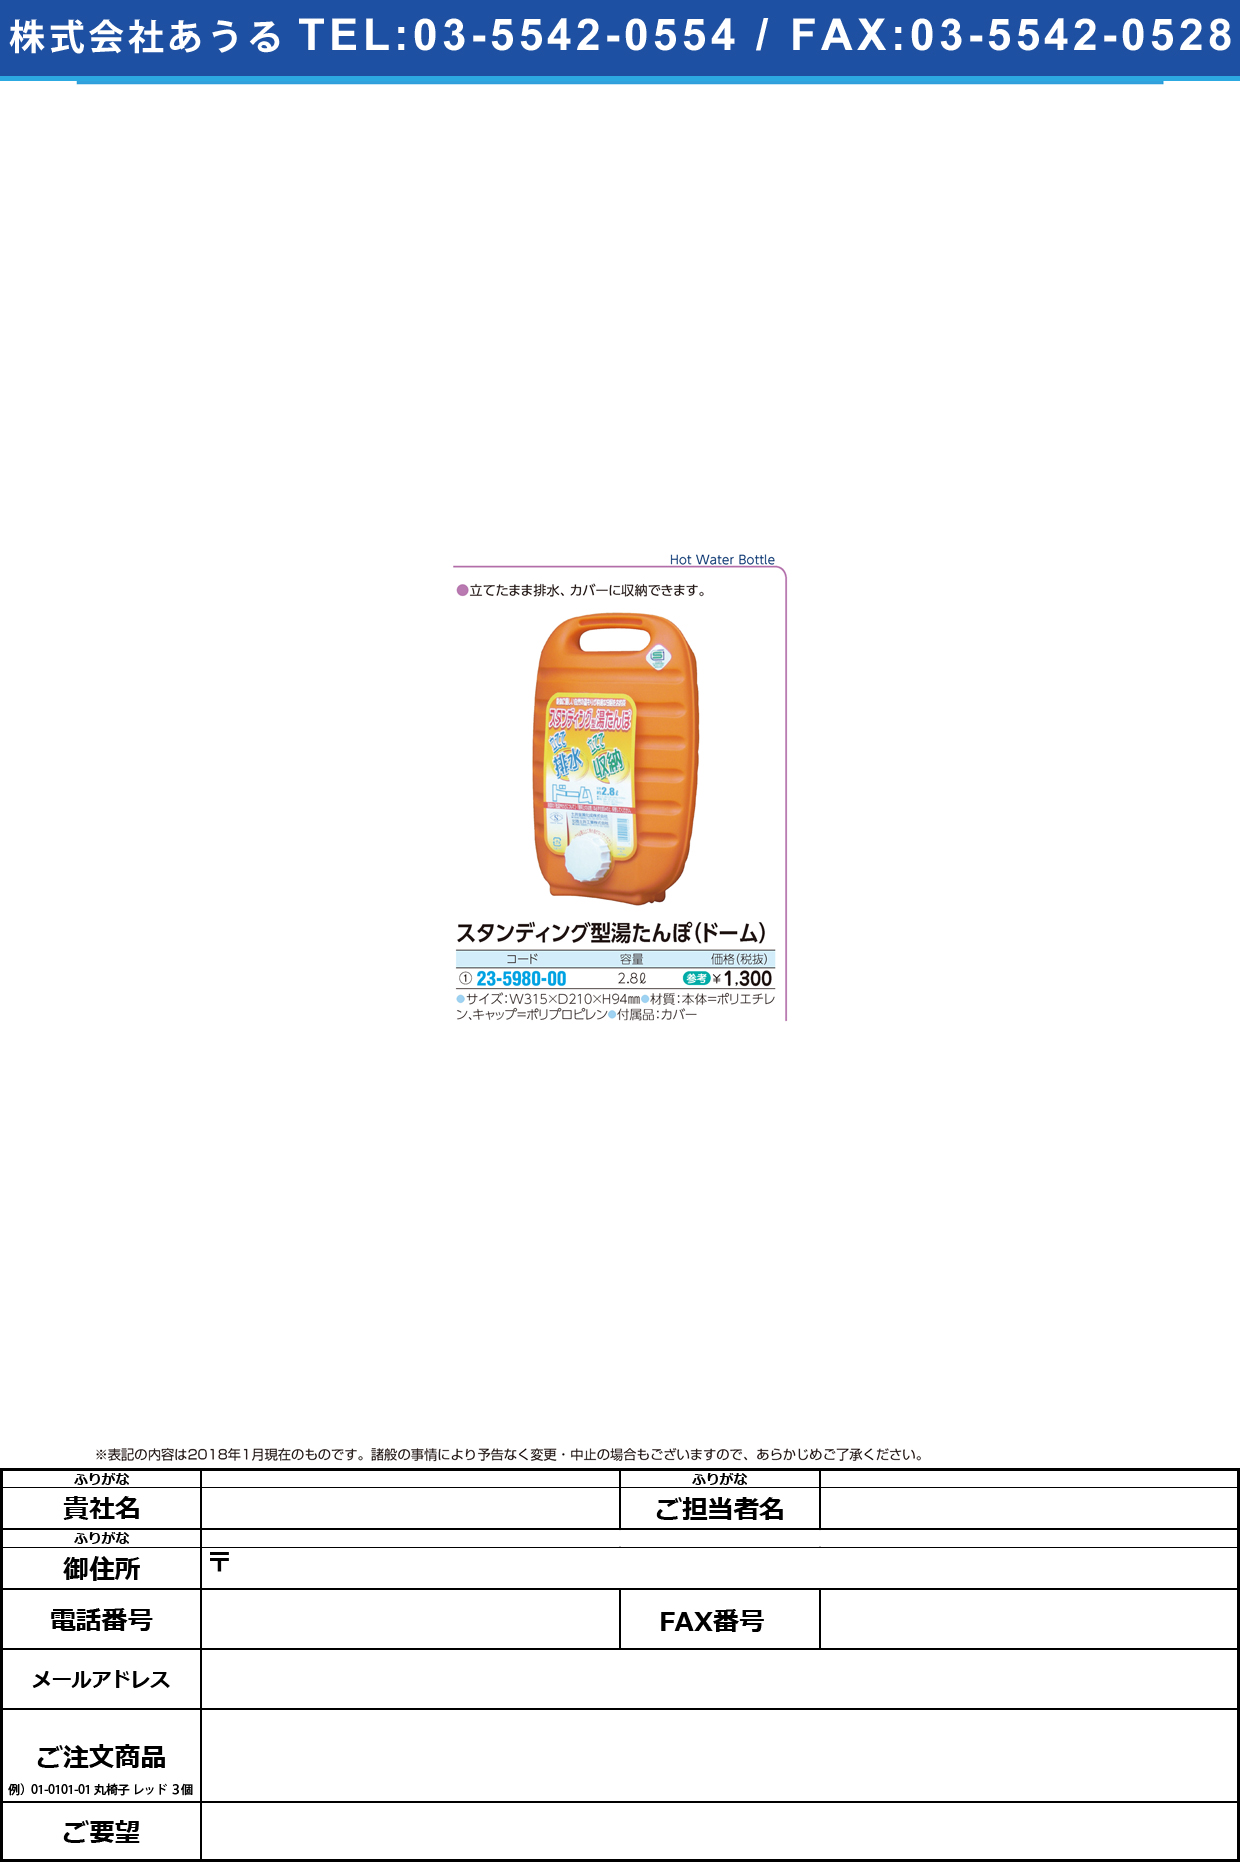 (23-5980-00)スタンディング湯たんぽドーム（袋付 2.8L ｽﾀﾝﾃﾞｨﾝｸﾞﾕﾀﾝﾎﾟﾄﾞｰﾑ【1個単位】【2019年カタログ商品】